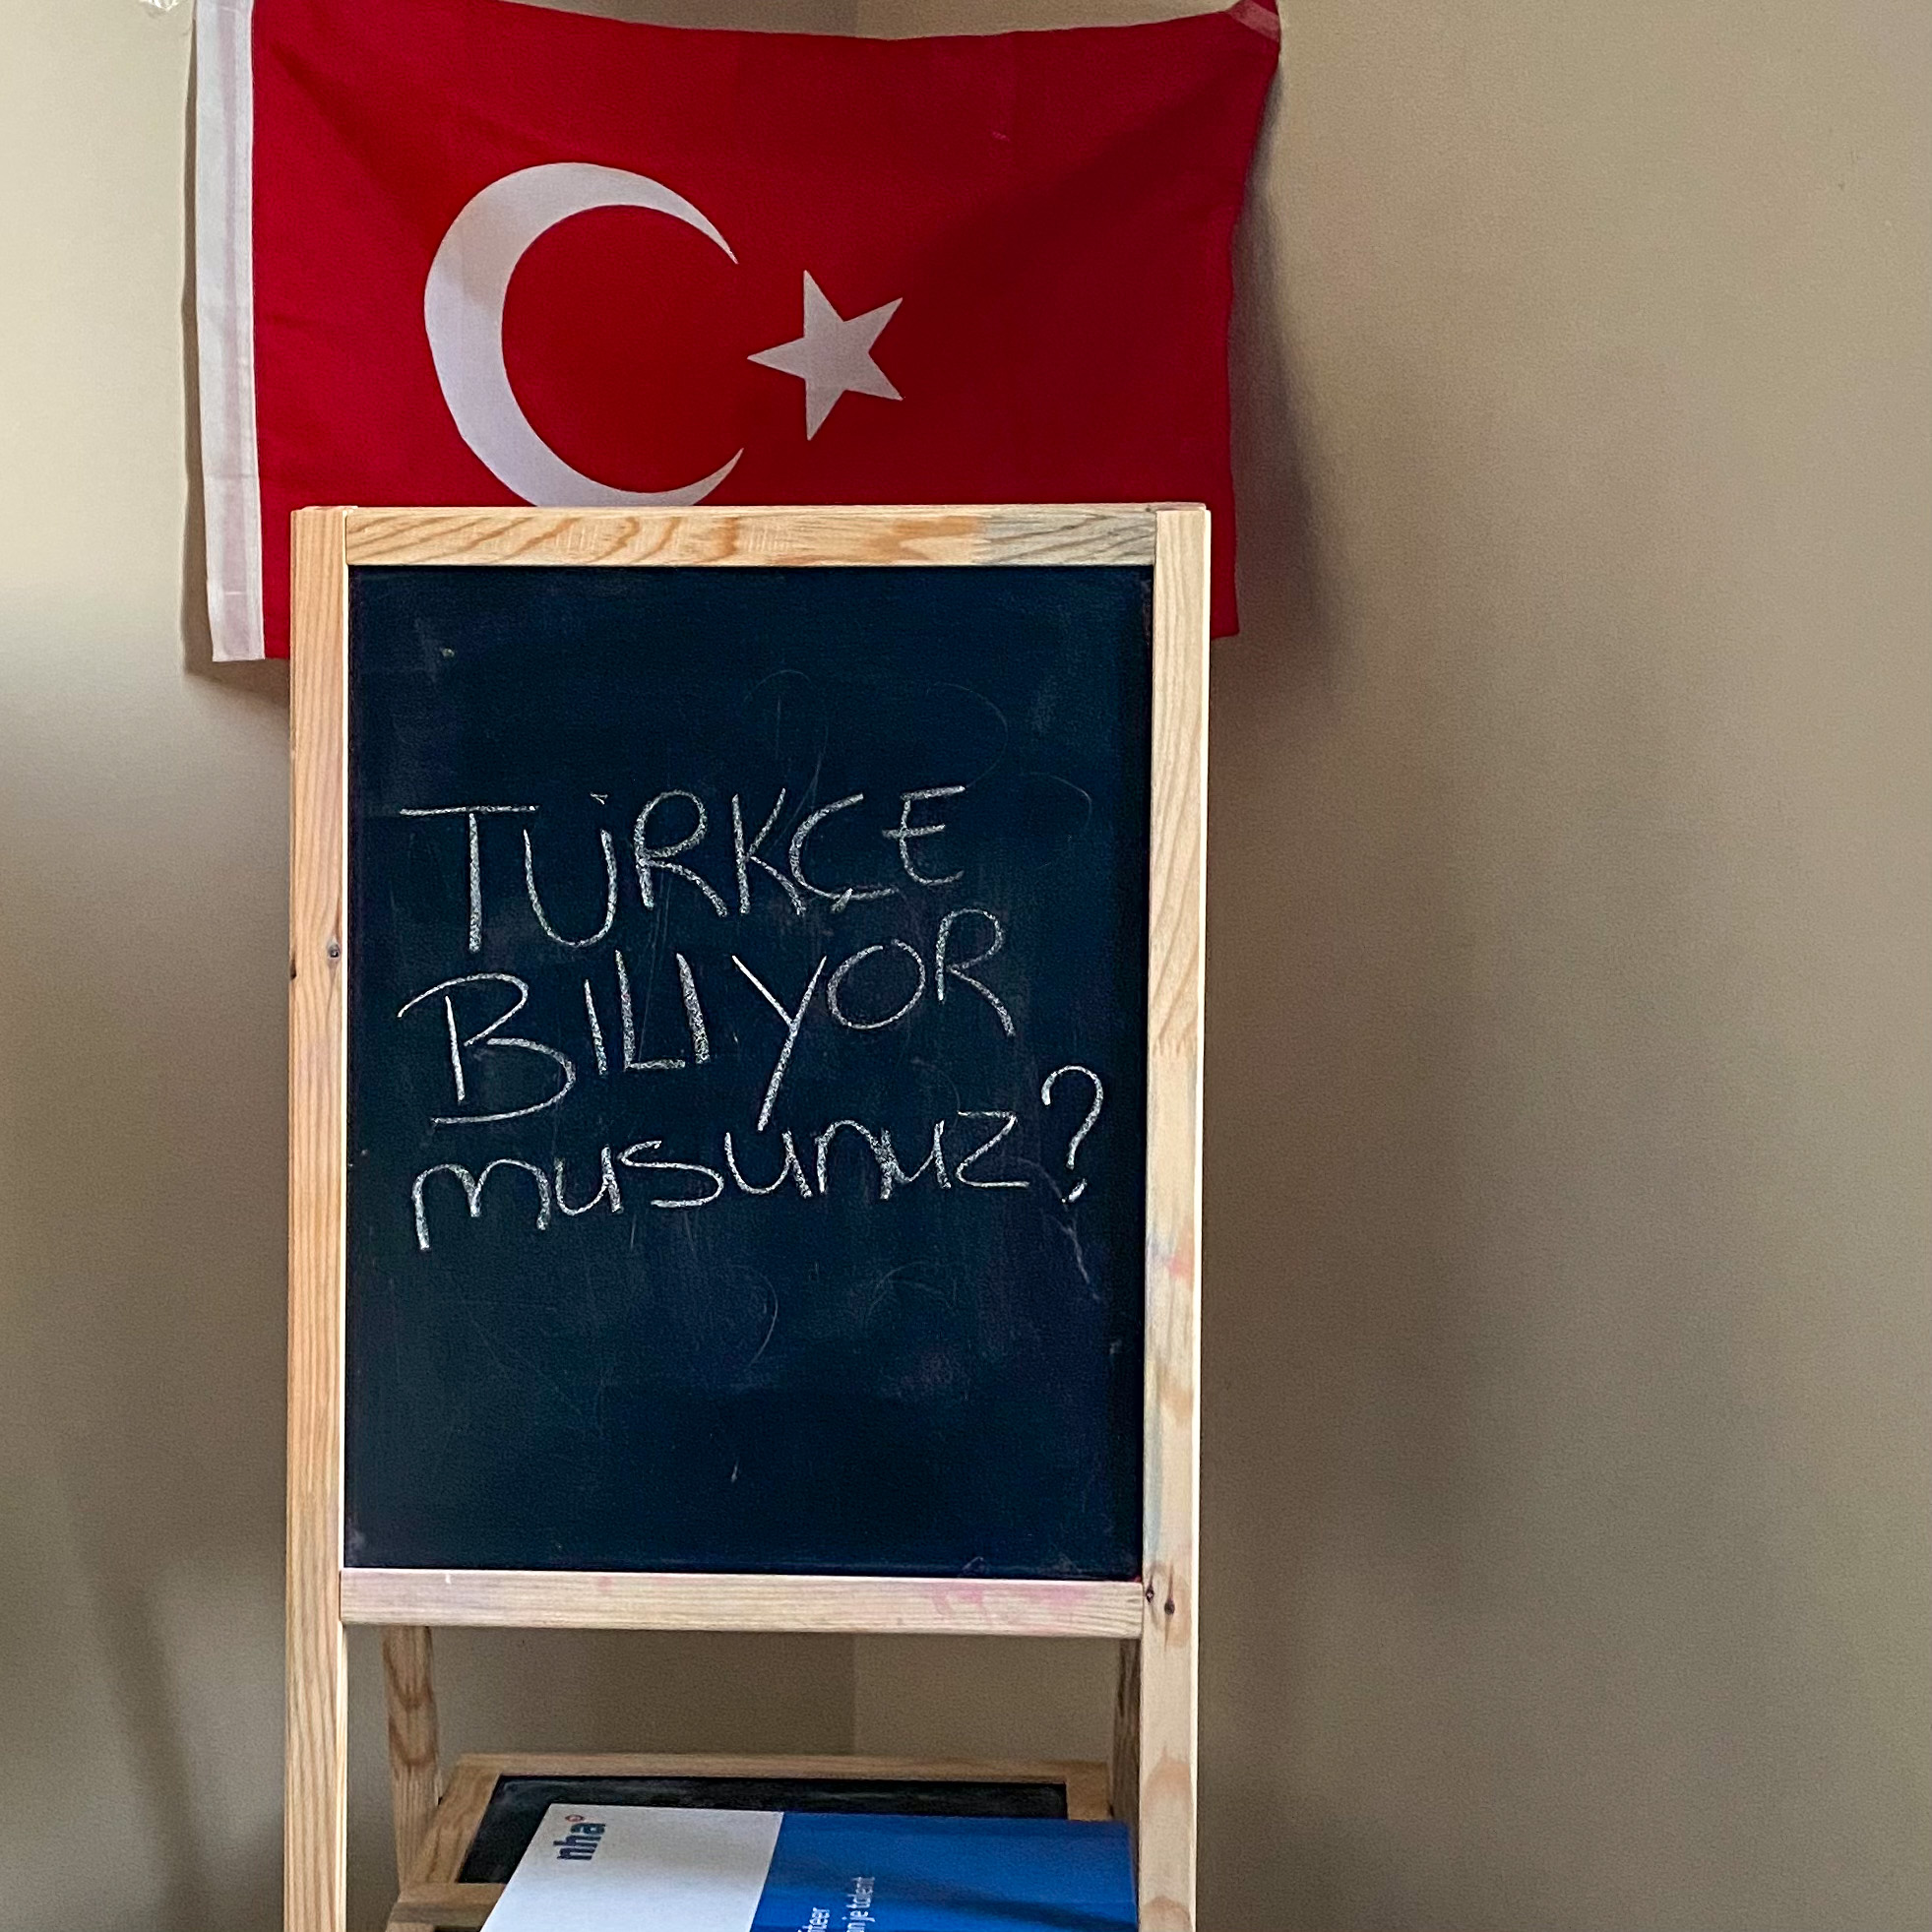 Turks leren